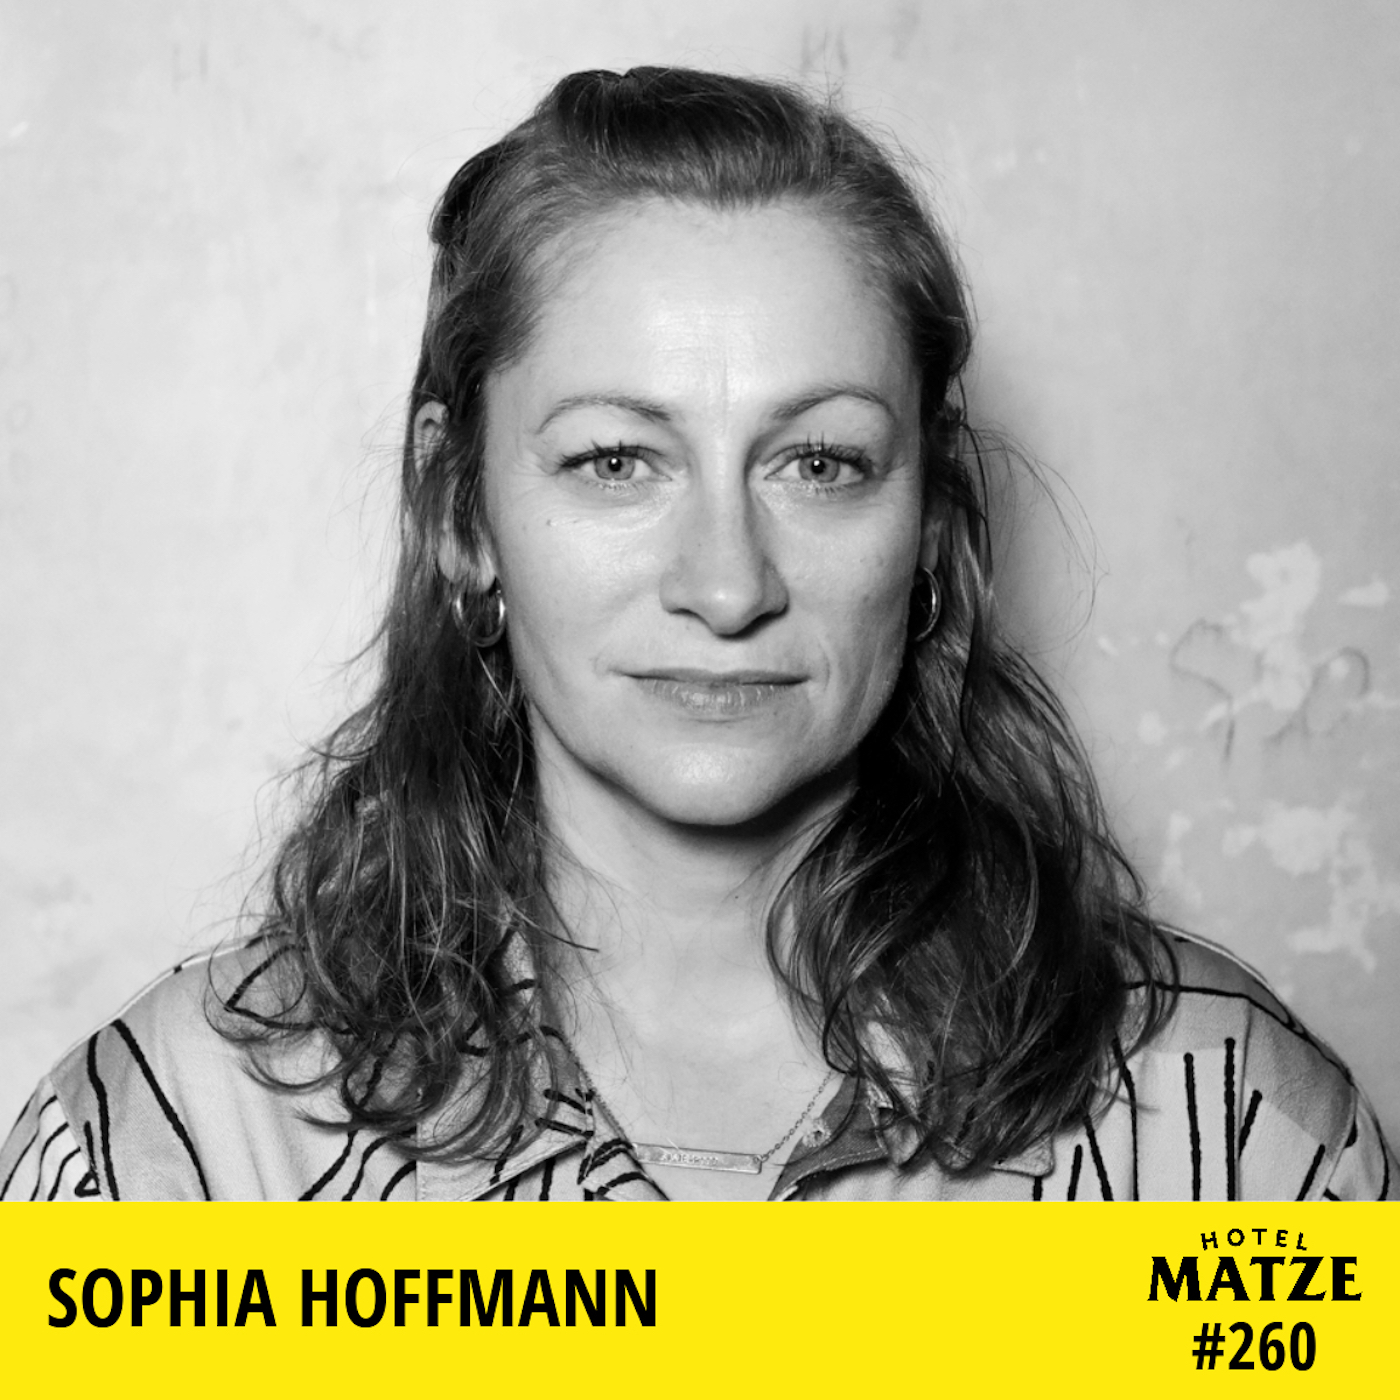 Sophia Hoffmann – Wie sollten wir mit sexualisierter Gewalt und Machtmissbrauch umgehen?